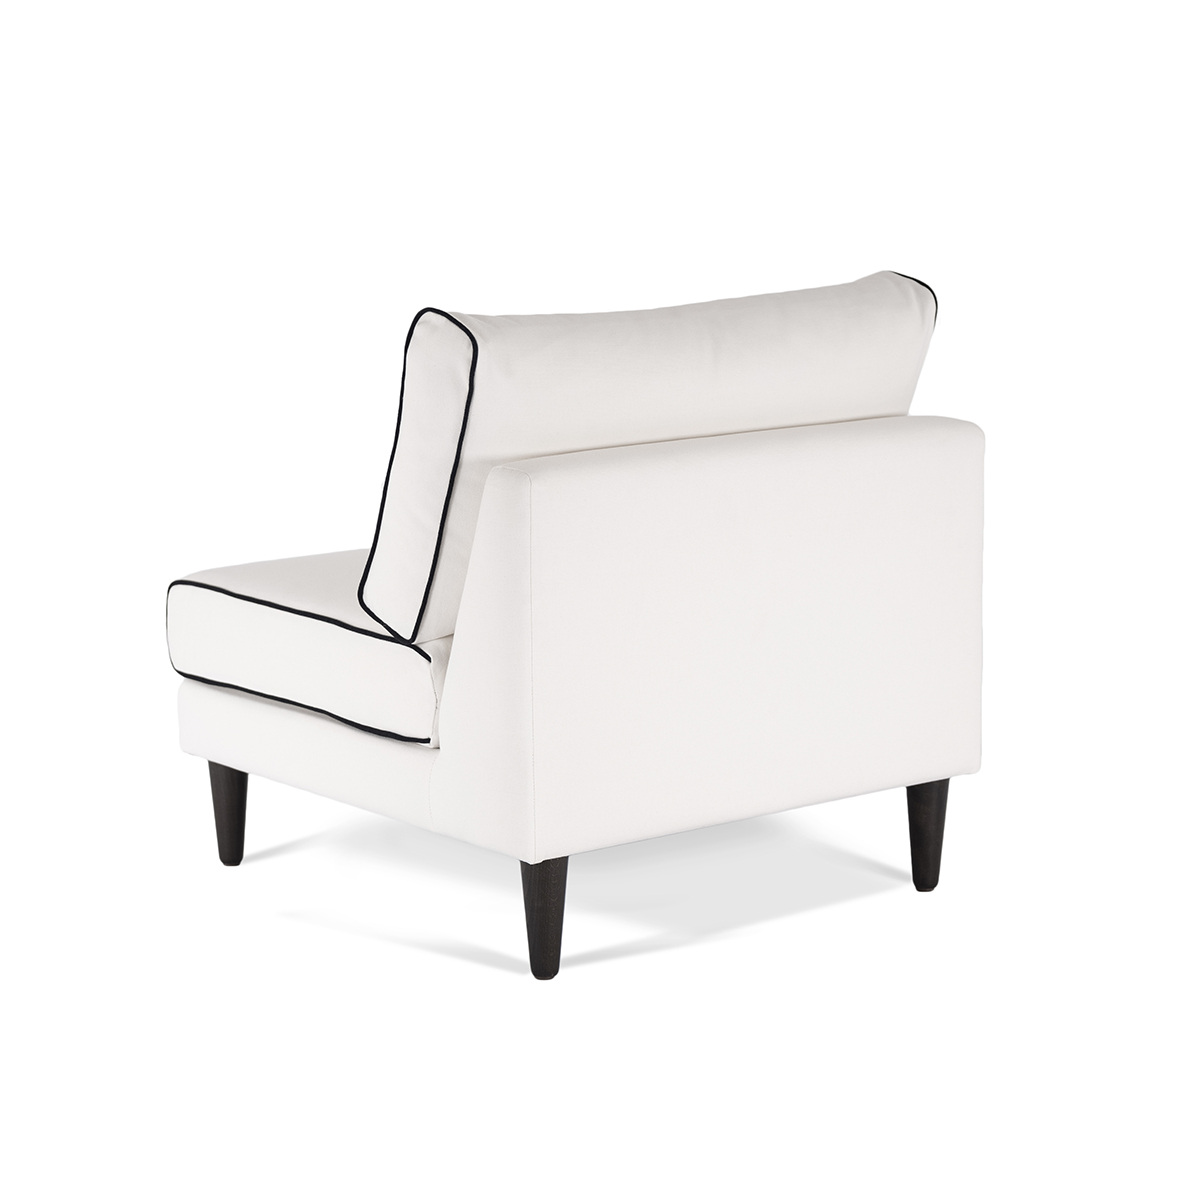 Flip Chair Noa, White / Black - H80 x W80 x D75 cm - Cotton / Wood - image 4